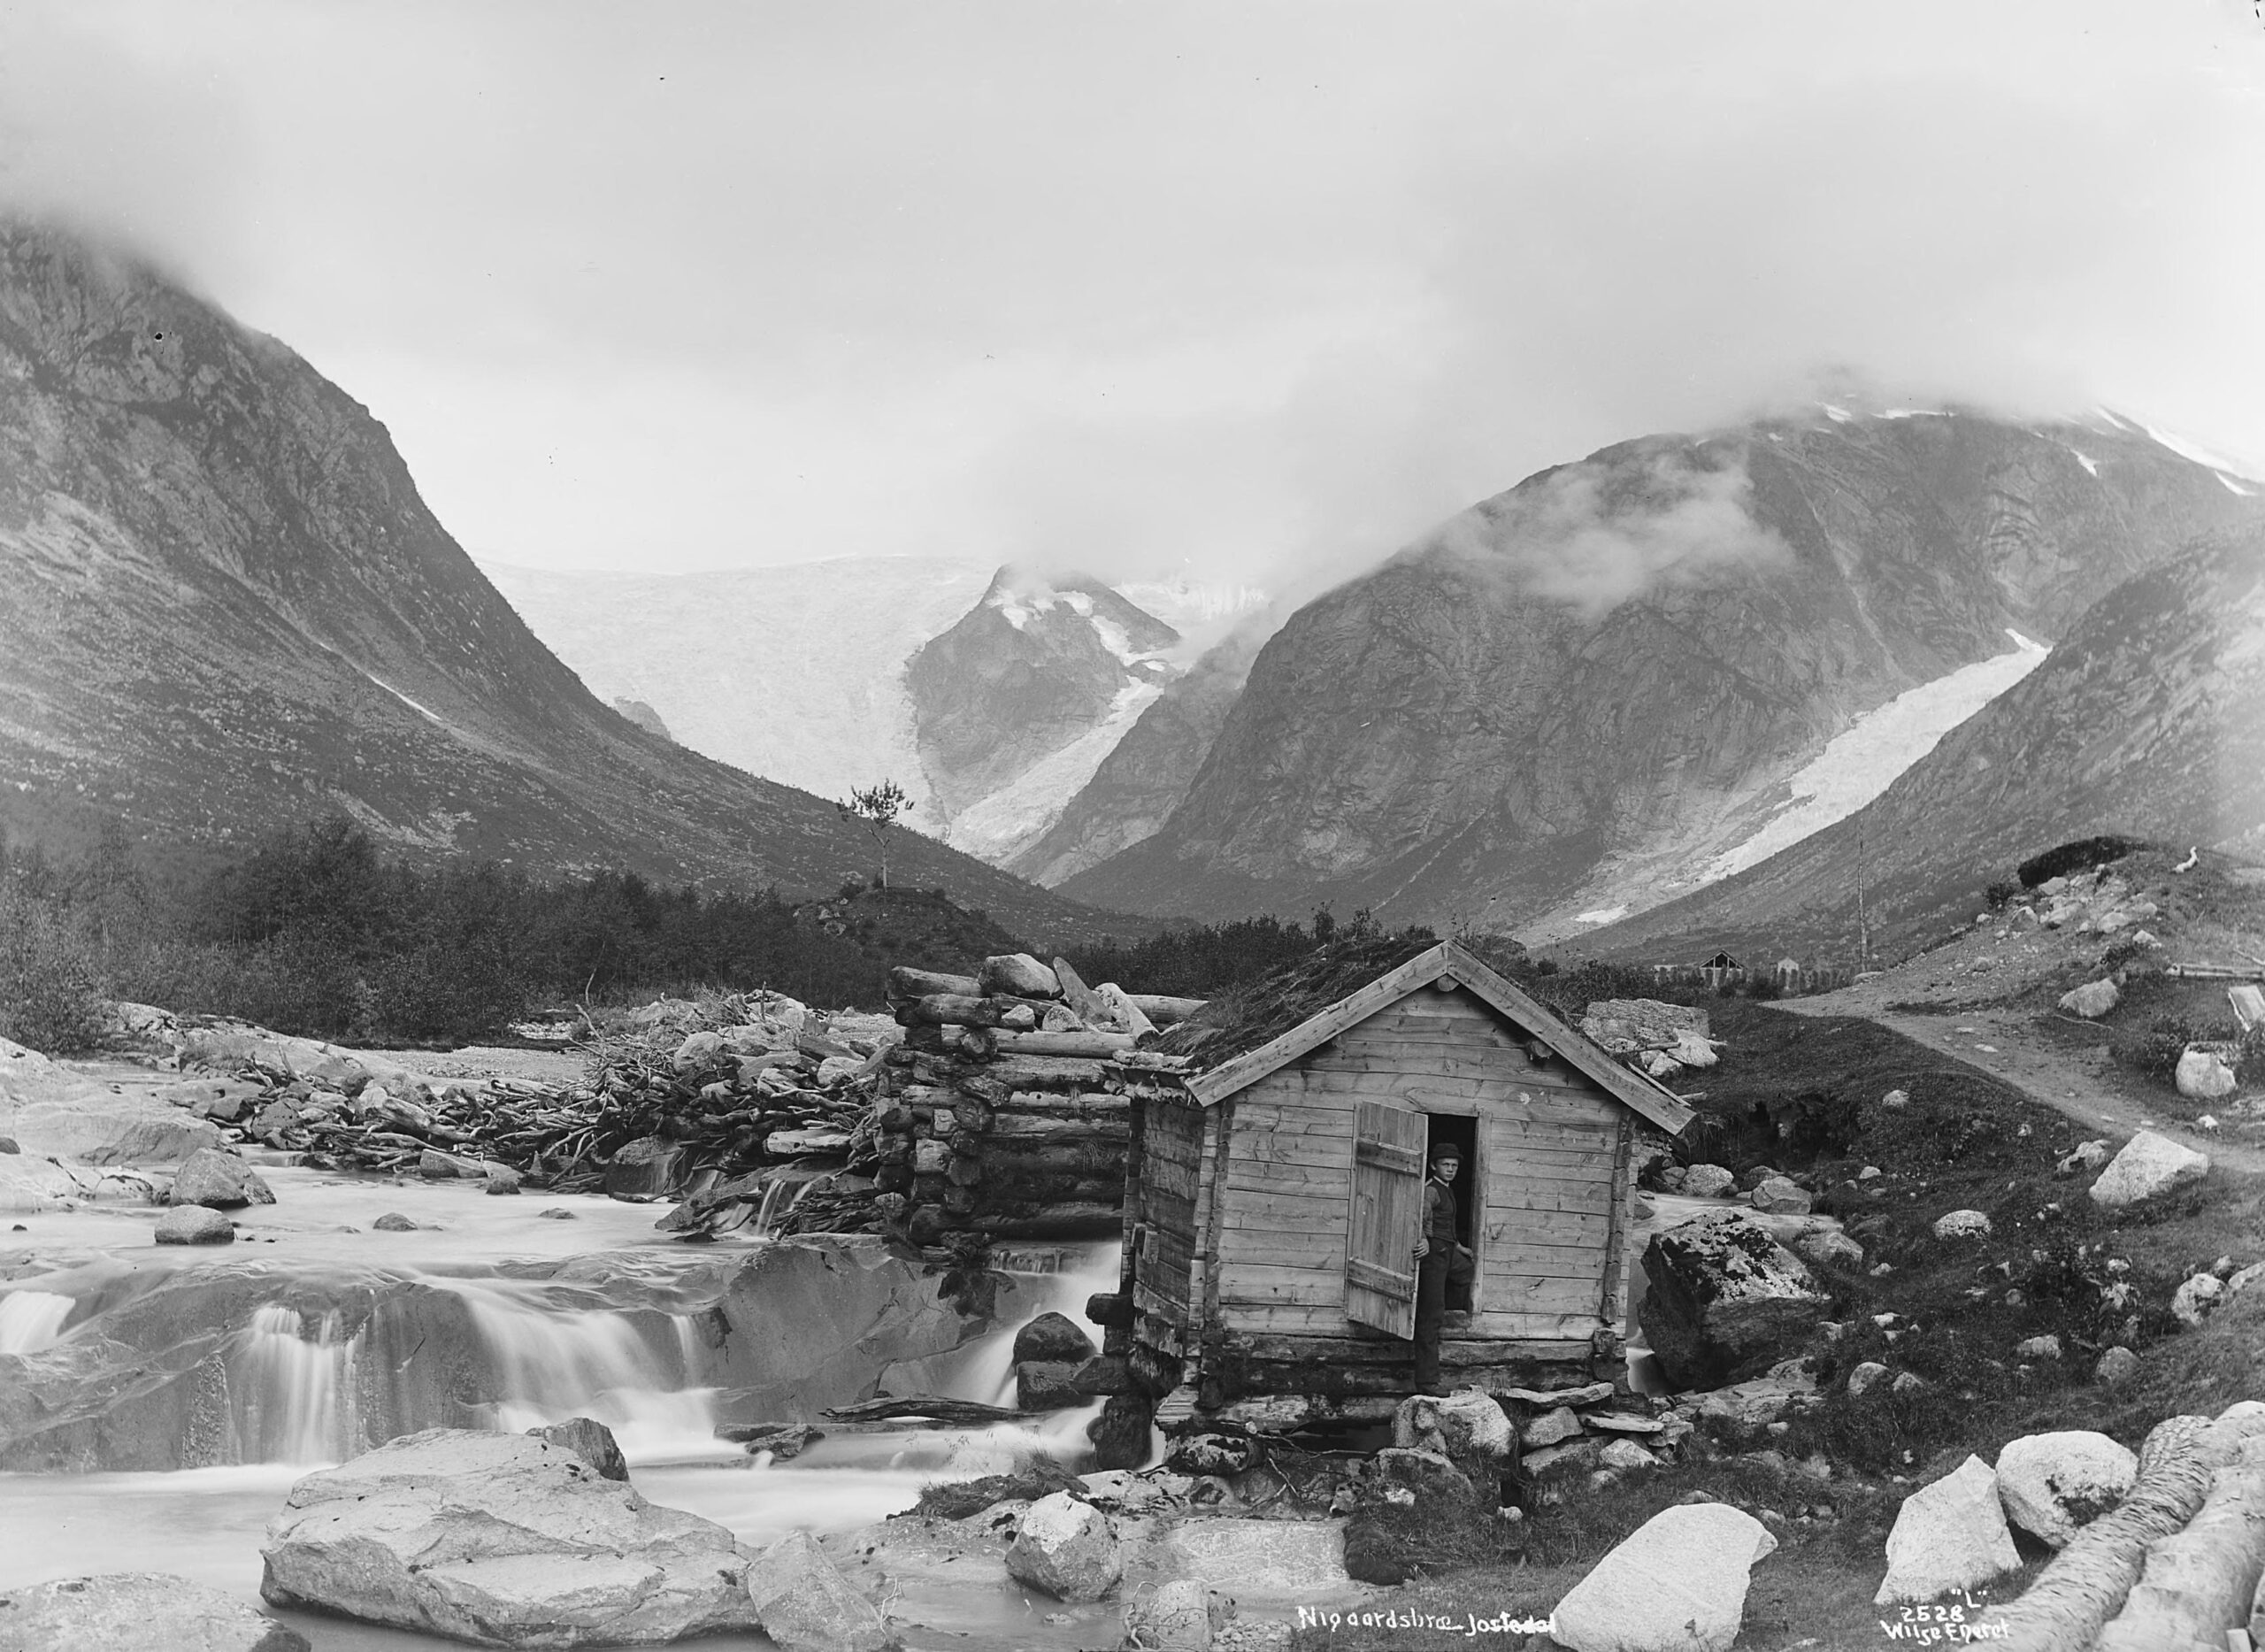 Foto van het Krundalen in 1880-1890 door Axel lindahl met rechts de Tuftebreen. Collectie Nationale bibliotheek Noorwegen foto 02528.